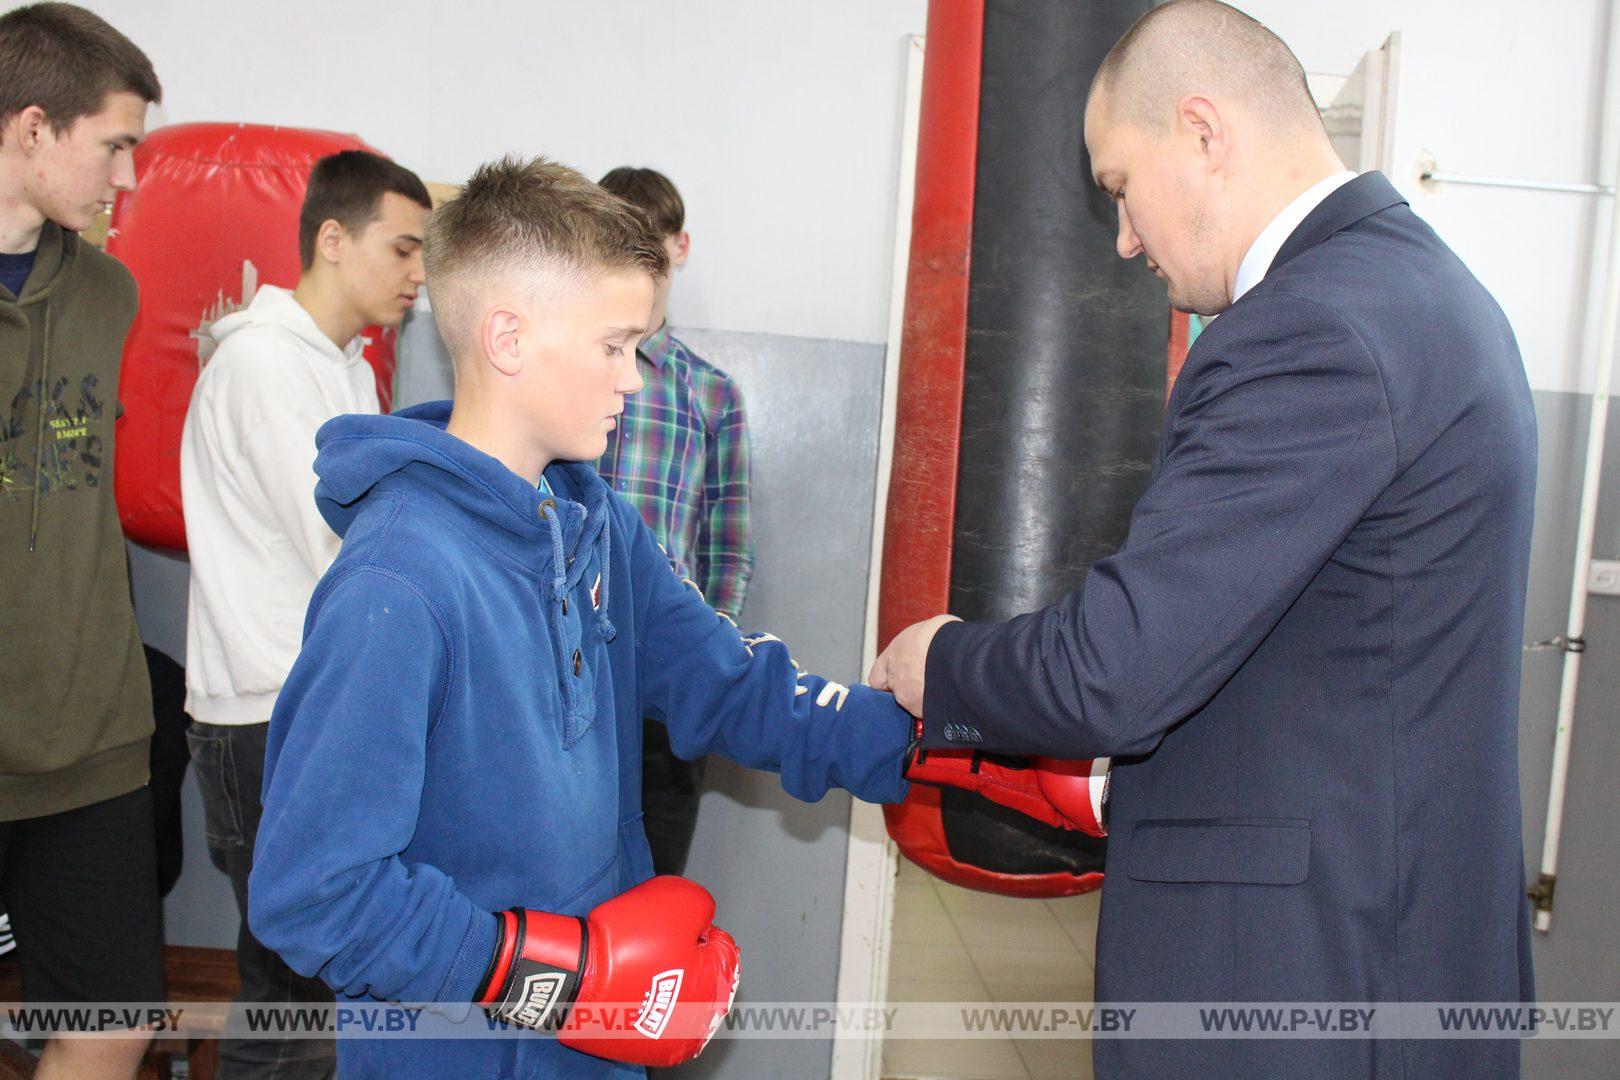 Для участников клуба «Подросток и Закон» организовали открытую тренировку по боксу